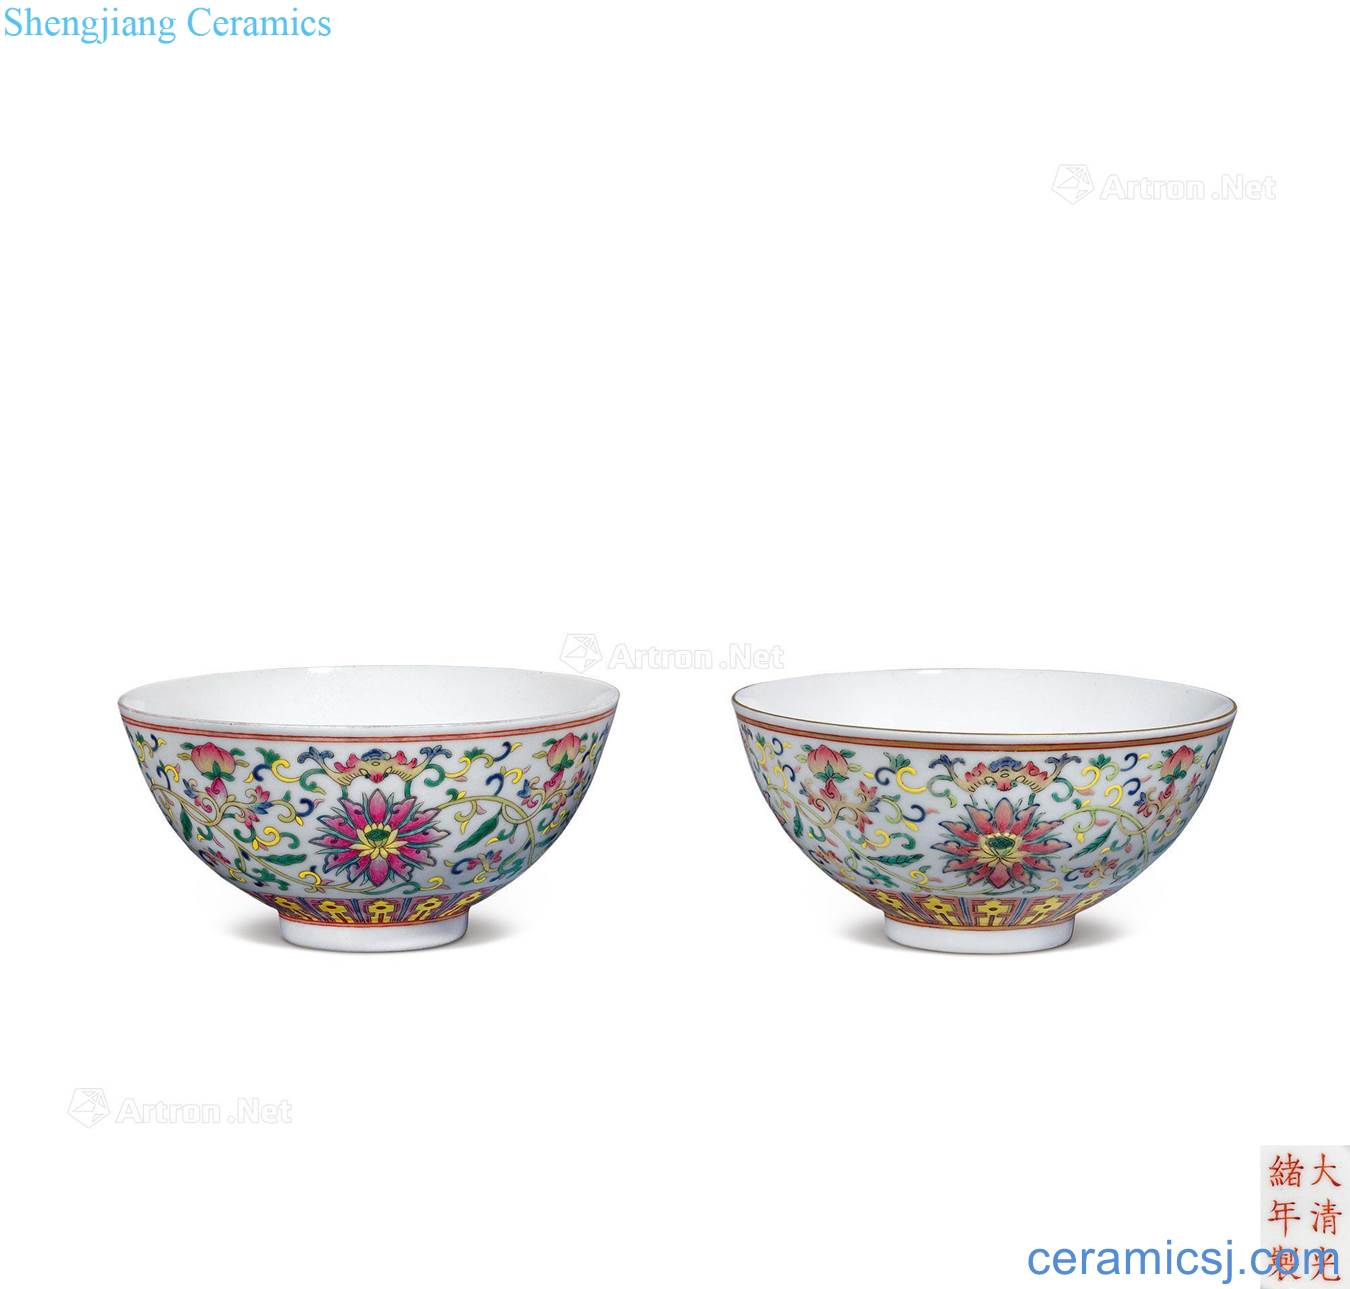 Guangxu pastel bound branch lotus green-splashed bowls (a)